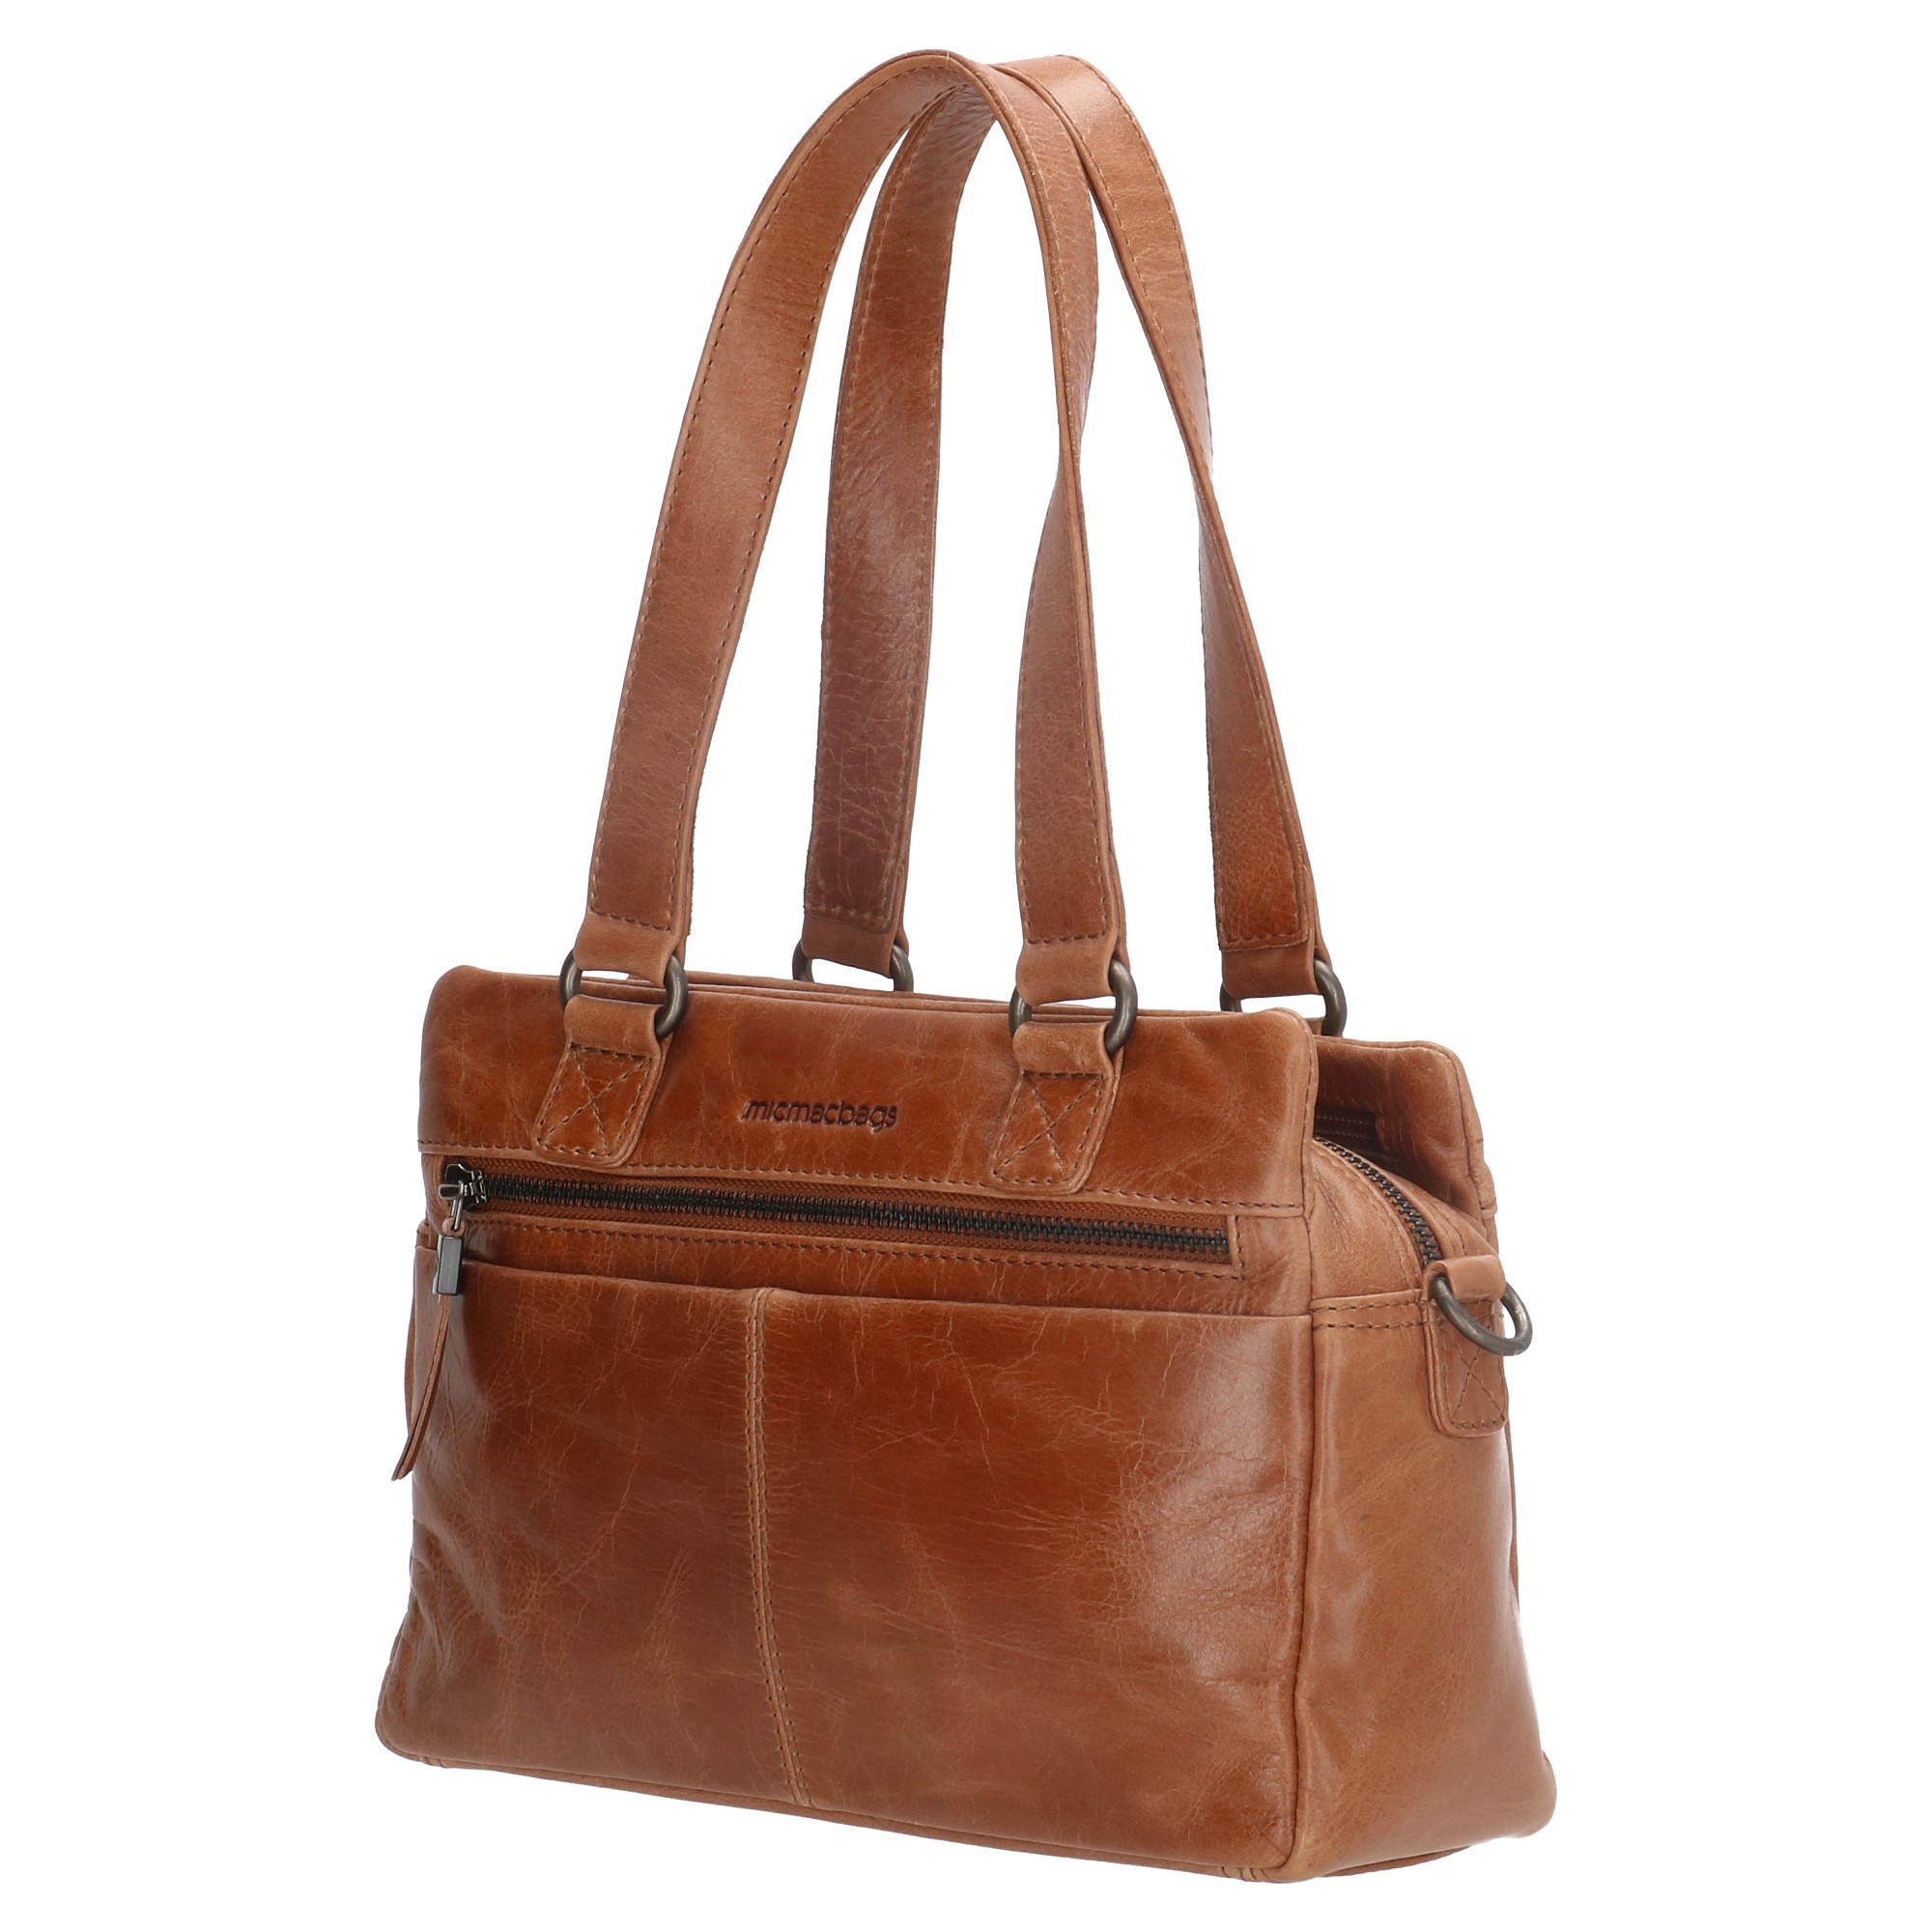 Hand Tooled Brown Leather Top Handle Handbag Purse Tassen & portemonnees Handtassen Handtassen met kort handvat 